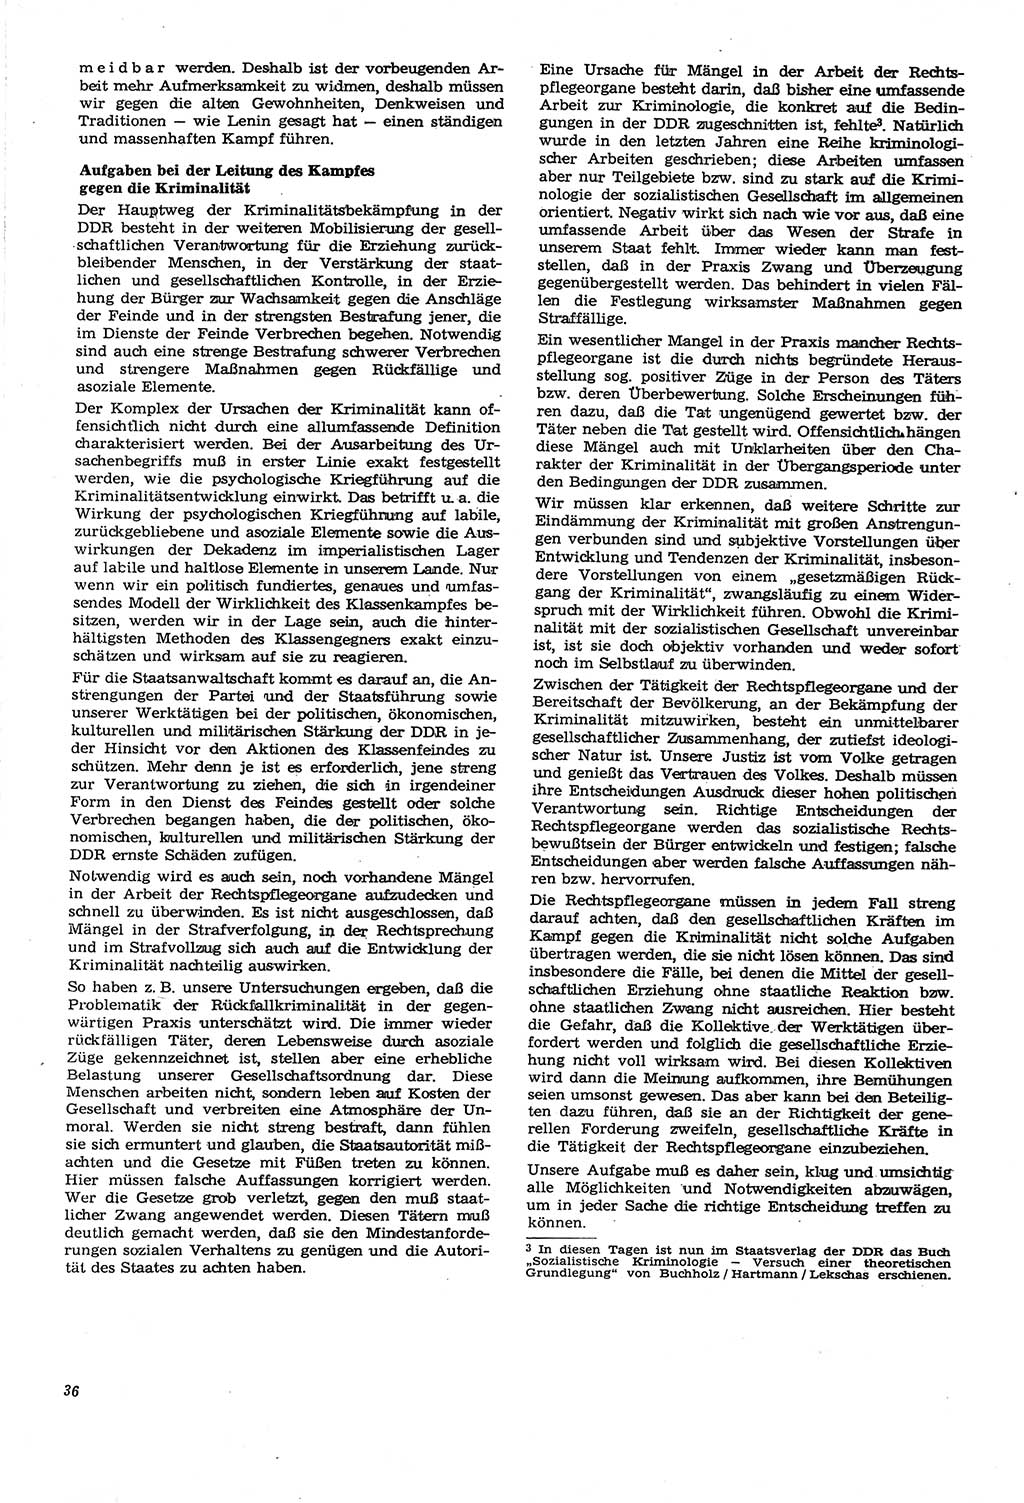 Neue Justiz (NJ), Zeitschrift für Recht und Rechtswissenschaft [Deutsche Demokratische Republik (DDR)], 21. Jahrgang 1967, Seite 36 (NJ DDR 1967, S. 36)